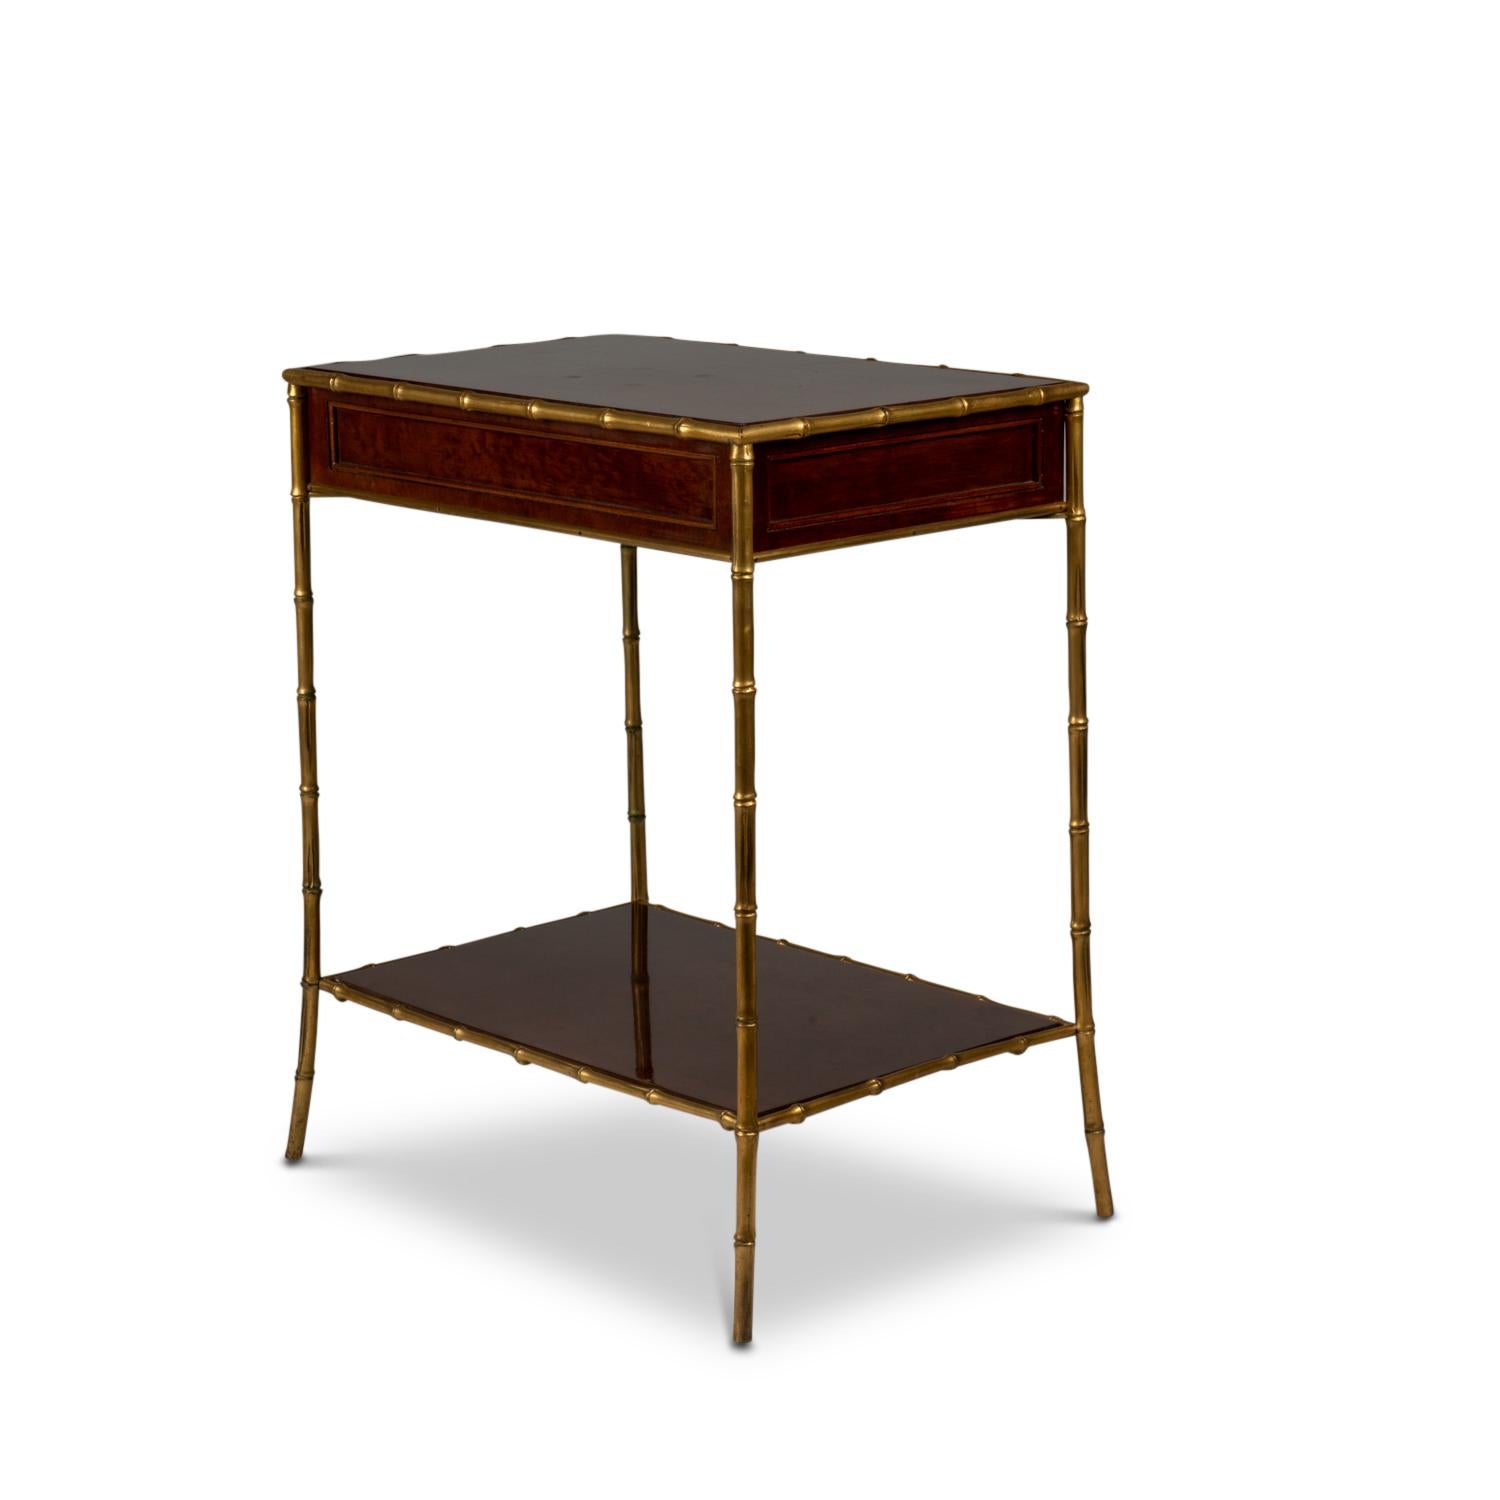 Maison Jansen, von.

Beistelltisch aus gesprenkeltem Mahagoni und Bronze, bestehend aus zwei Tabletts und einer Schublade vorne, rechteckig. Sockel aus vergoldeter Bronze
Bambus imitieren.

Französisches Werk aus den 1970er Jahren.